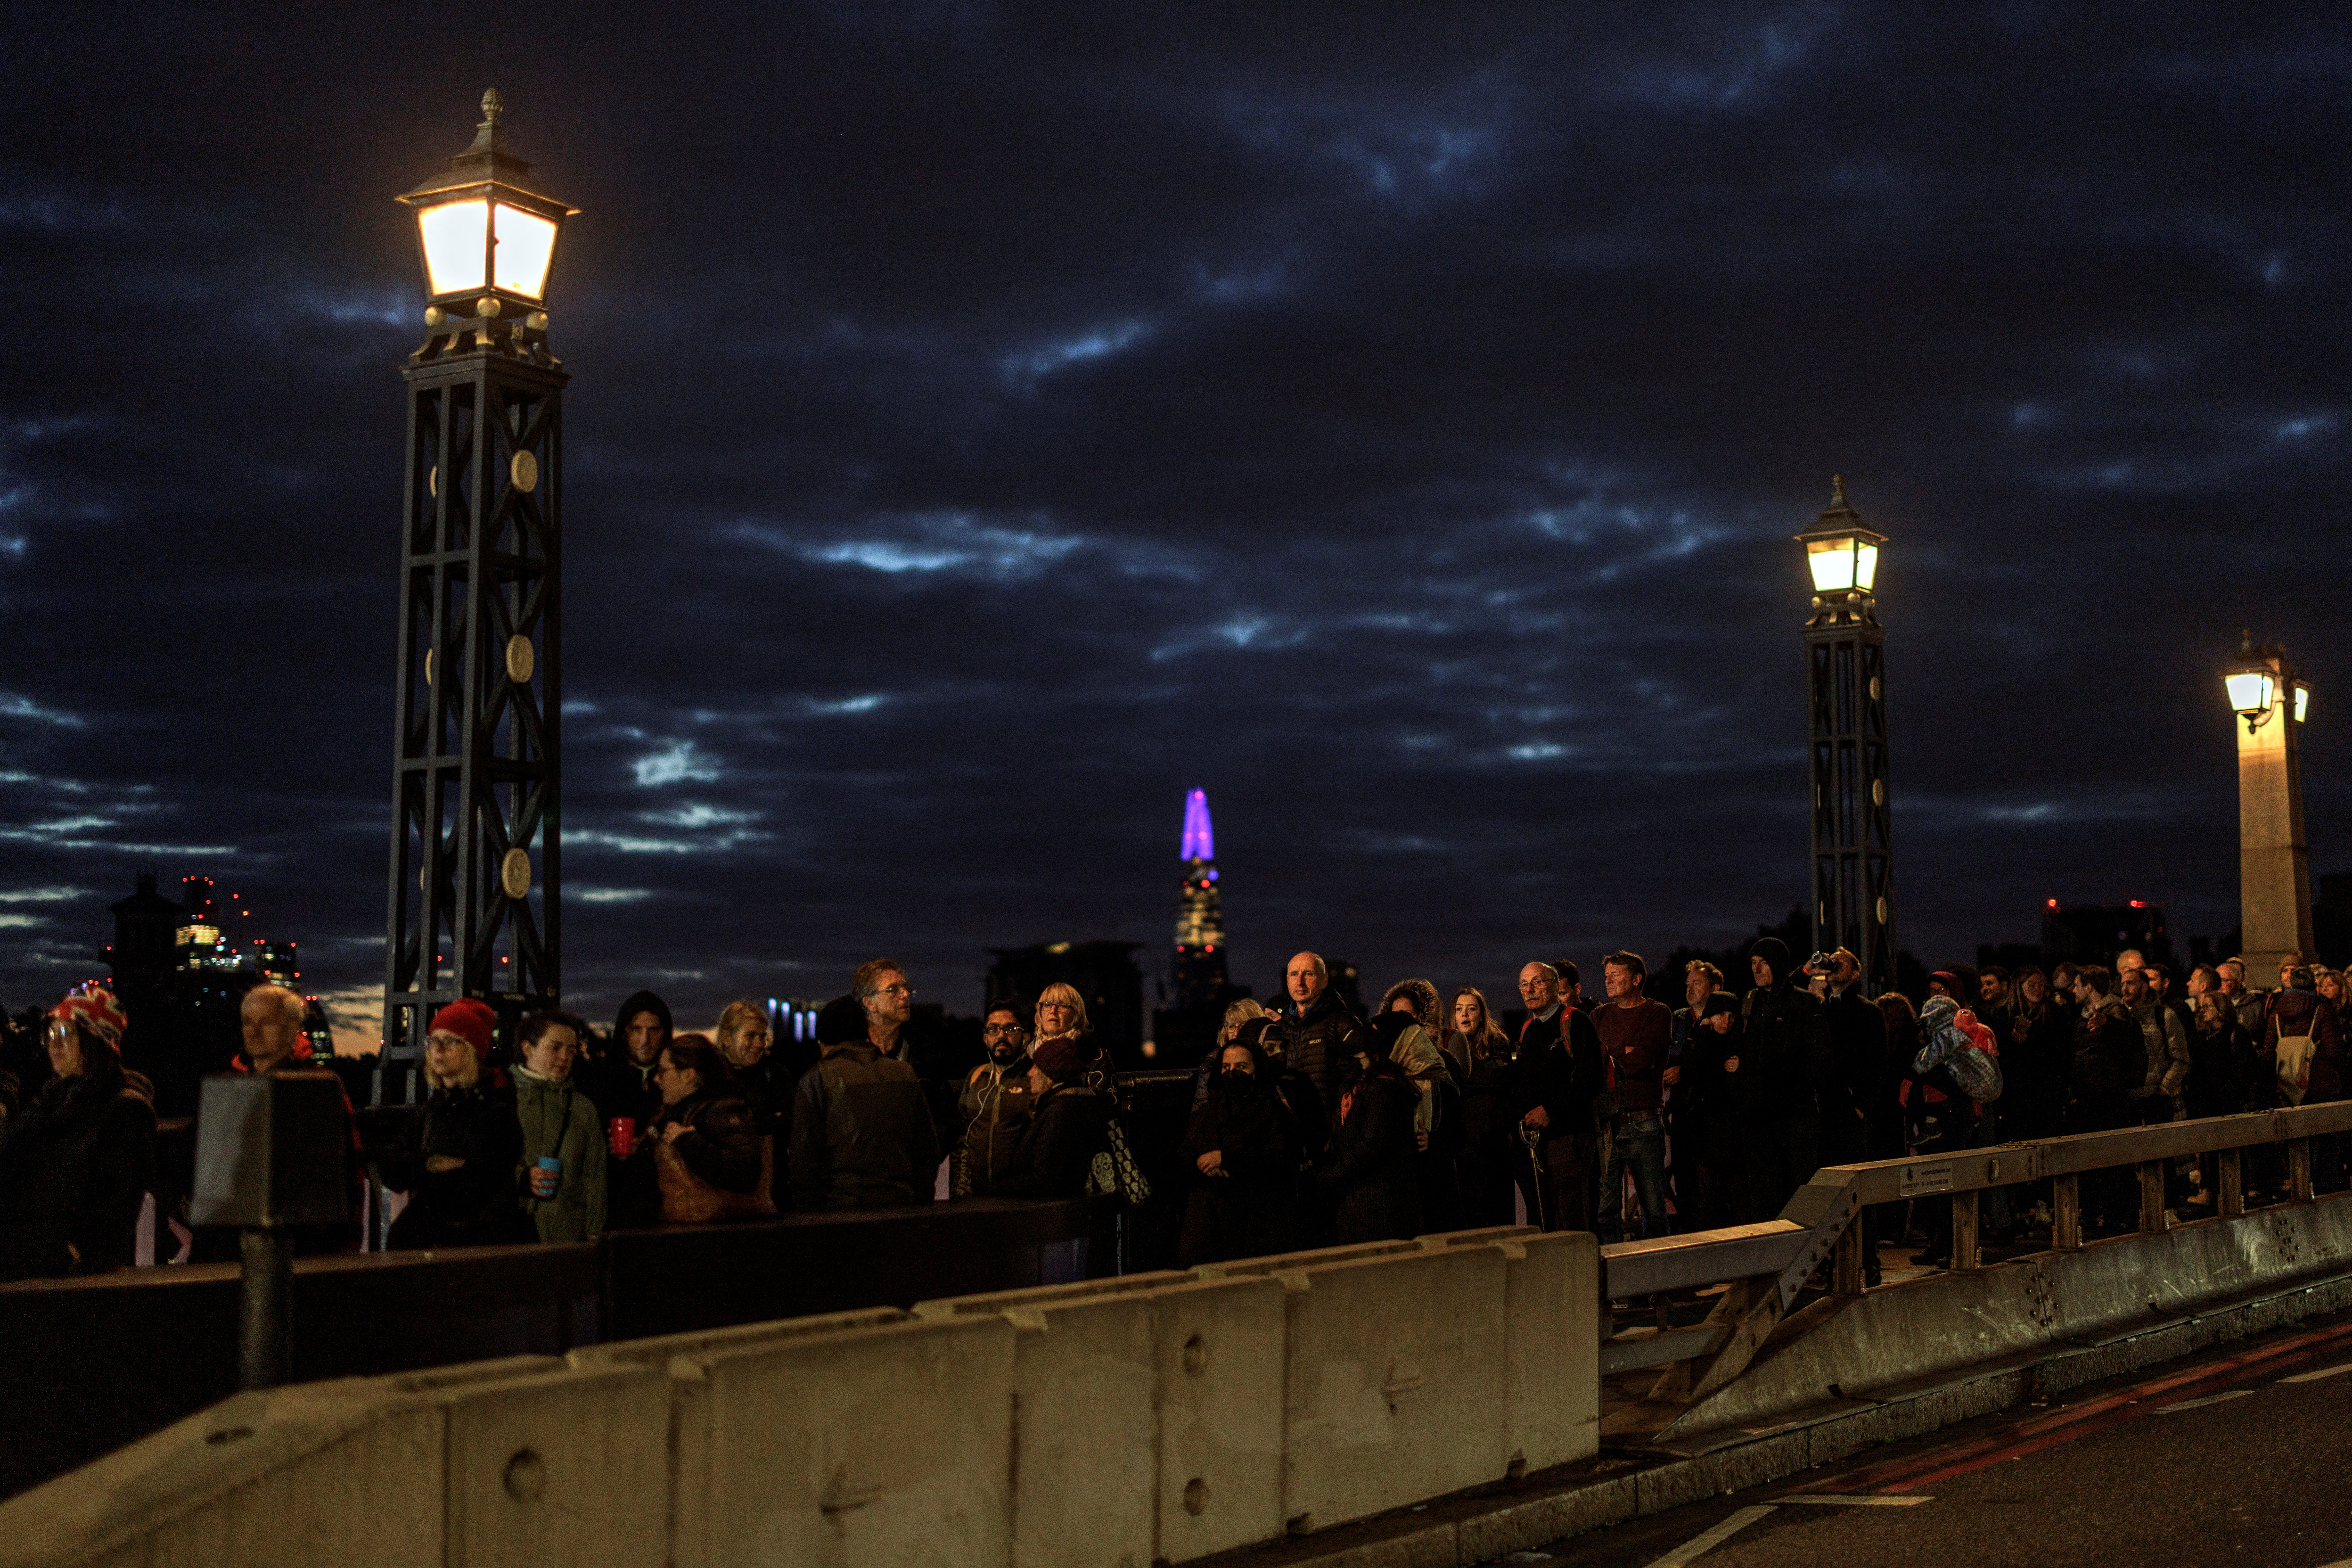 La gente hace cola en el puente de Lambeth para presentar sus respetos tras la muerte de la reina Isabel de Inglaterra, en Londres, Gran Bretaña, el 16 de septiembre de 2022. REUTERS/Alkis Konstantinidis